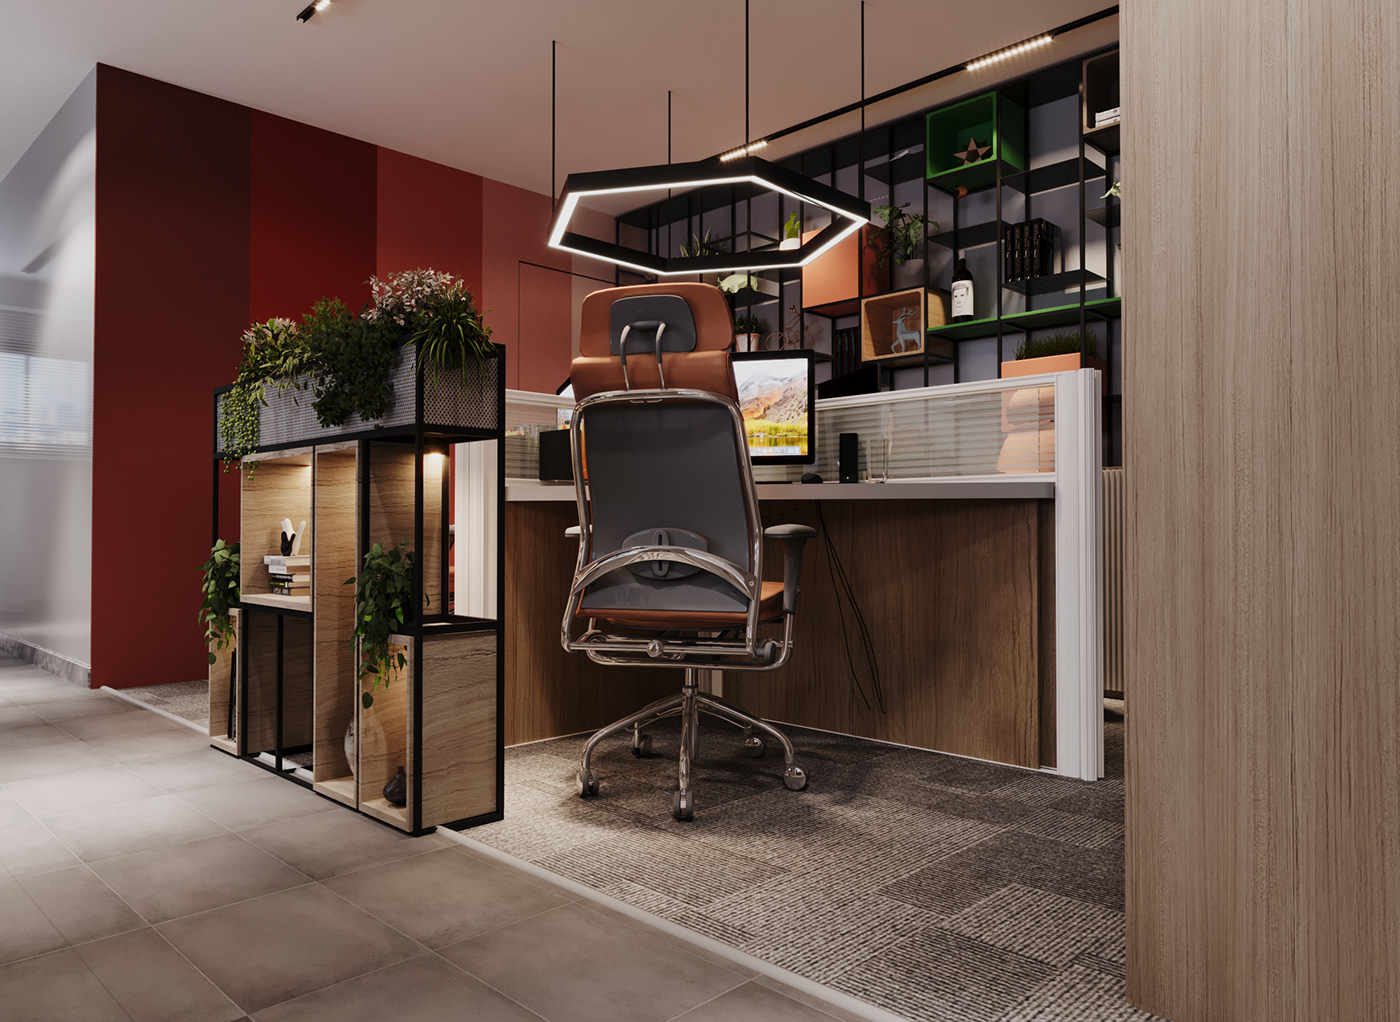 company Office Office Design office furniture design interior design  architecture visualization рендер 3ds max